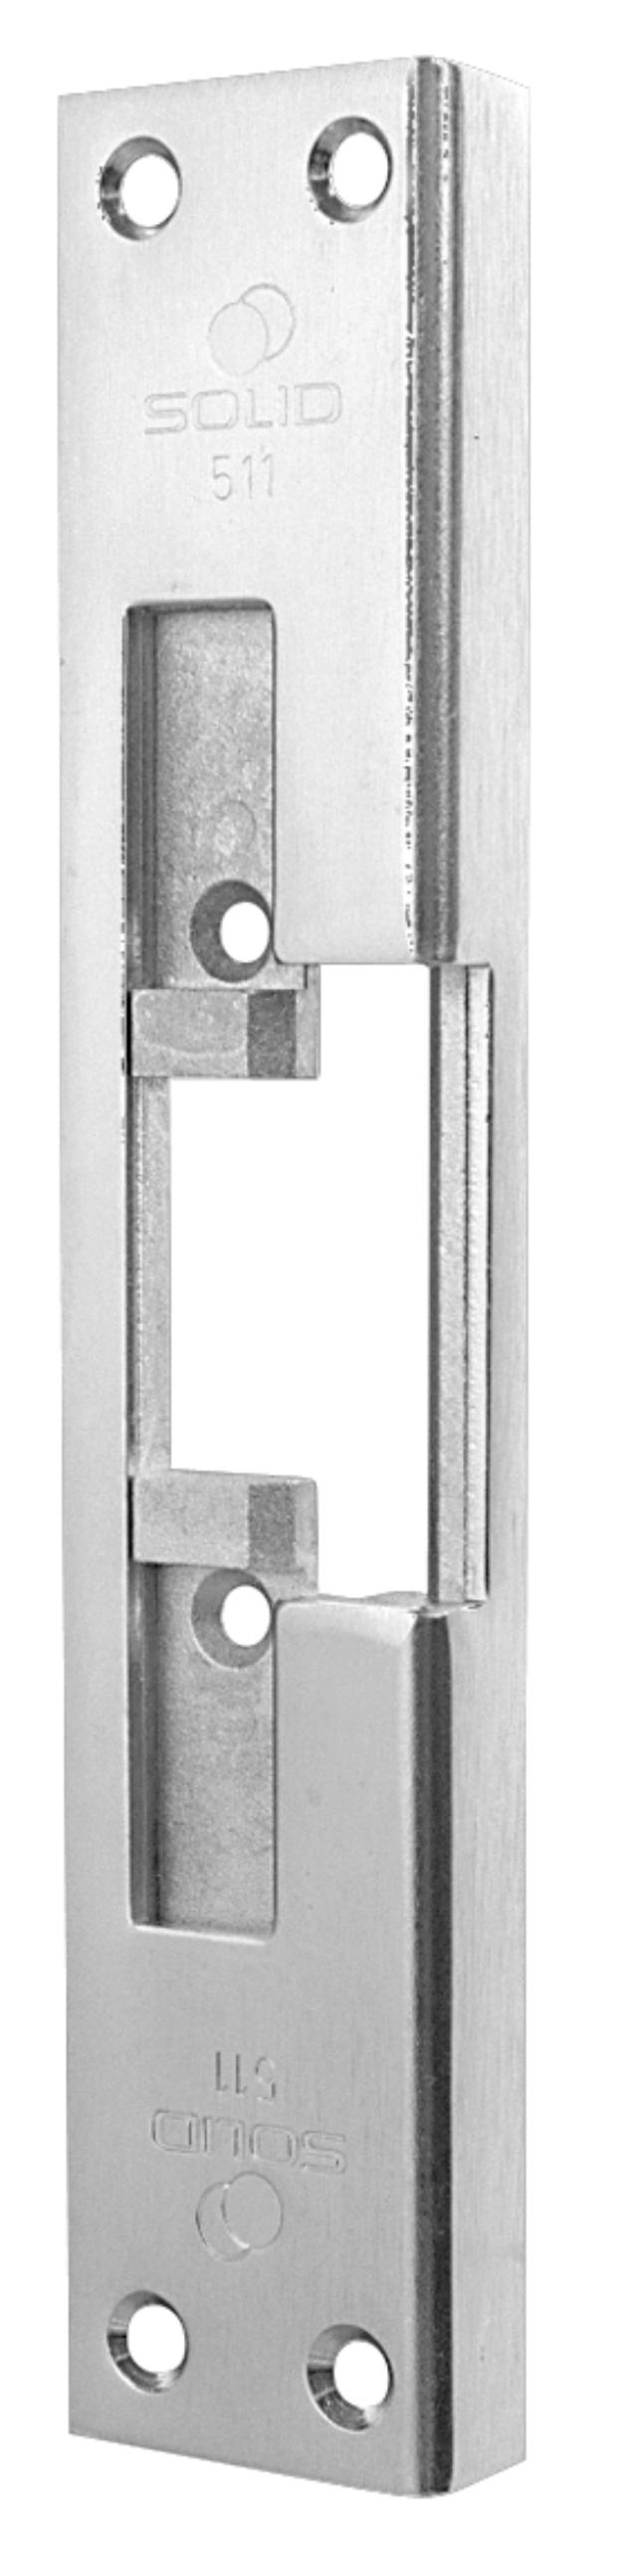 Solid stolpe 511 t/elektrisk endeplate (971237)